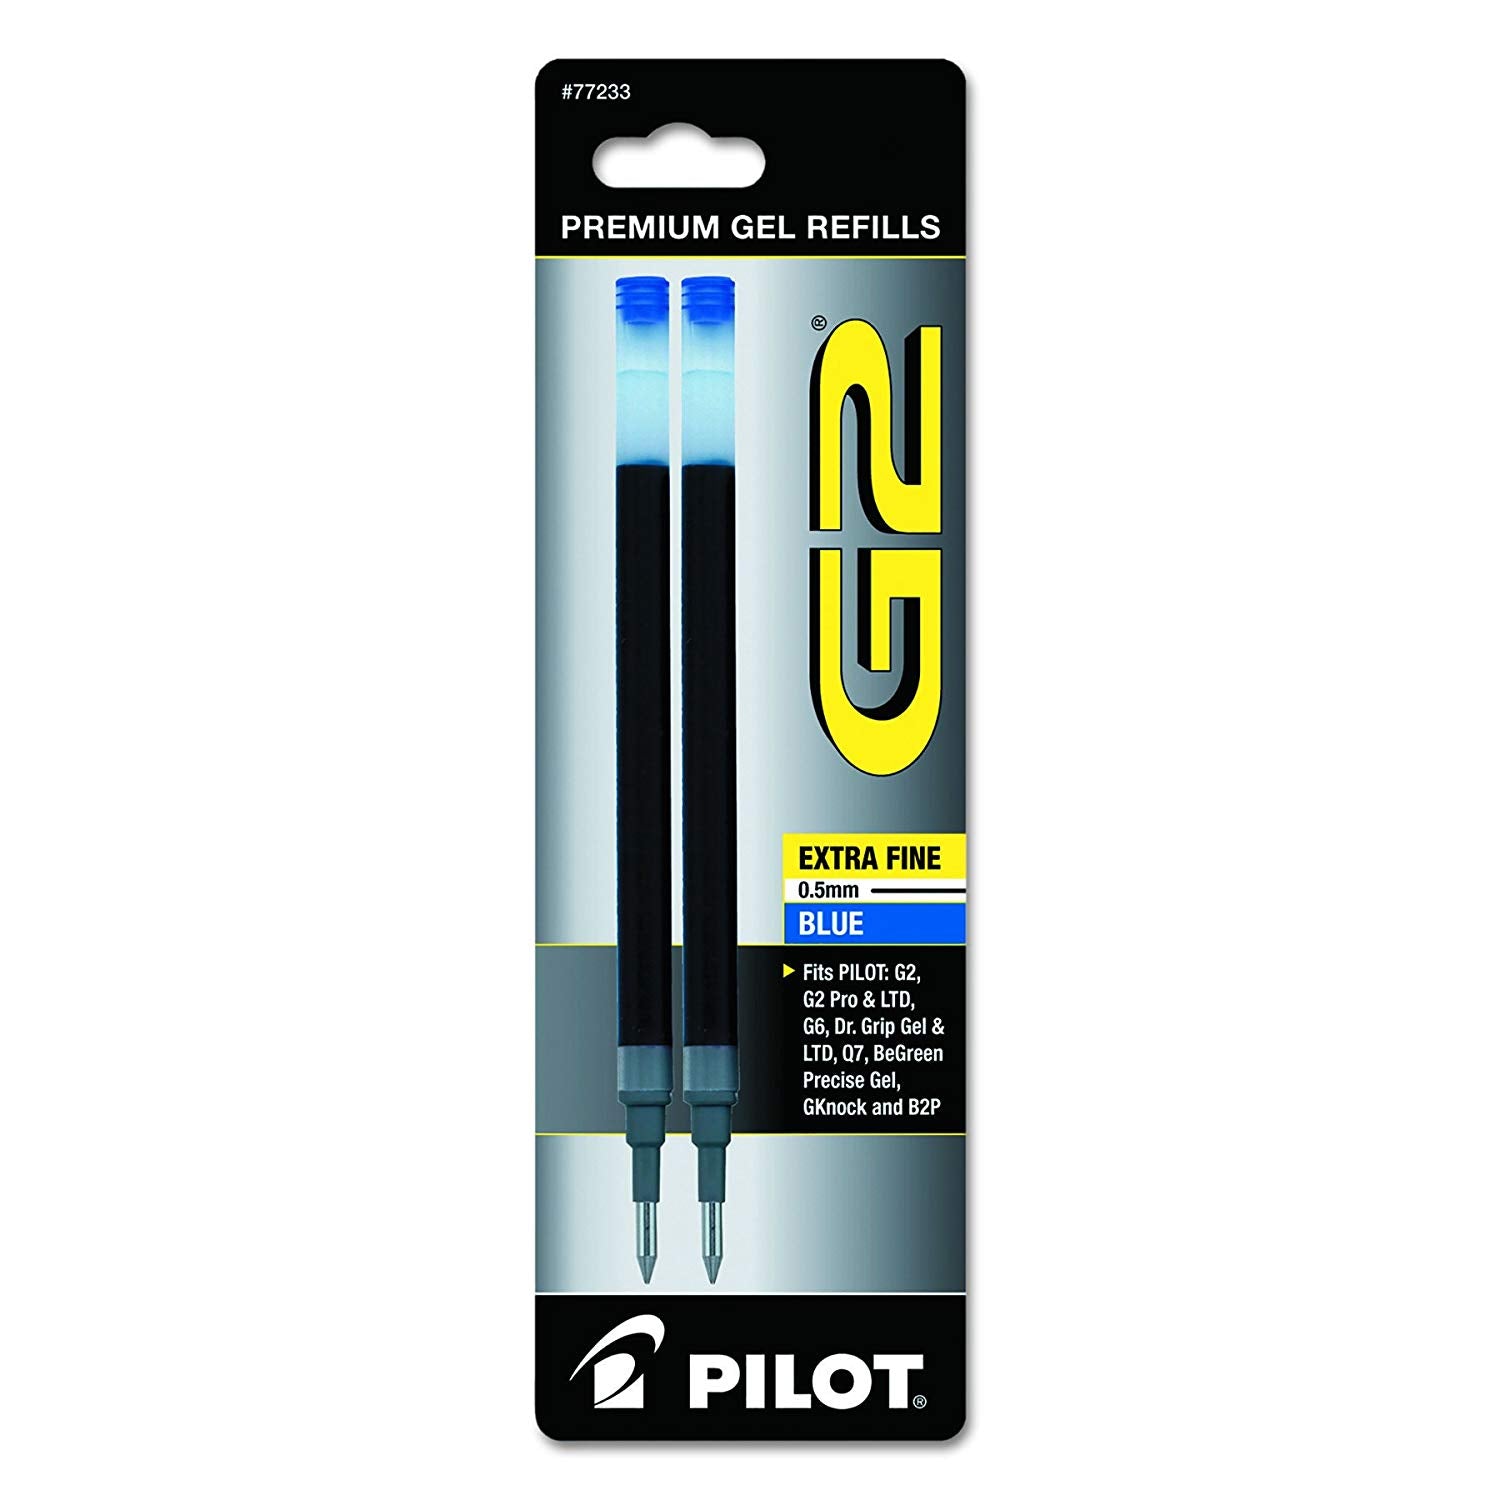 G2 Pilot Pen - Wyndham Art Supplies